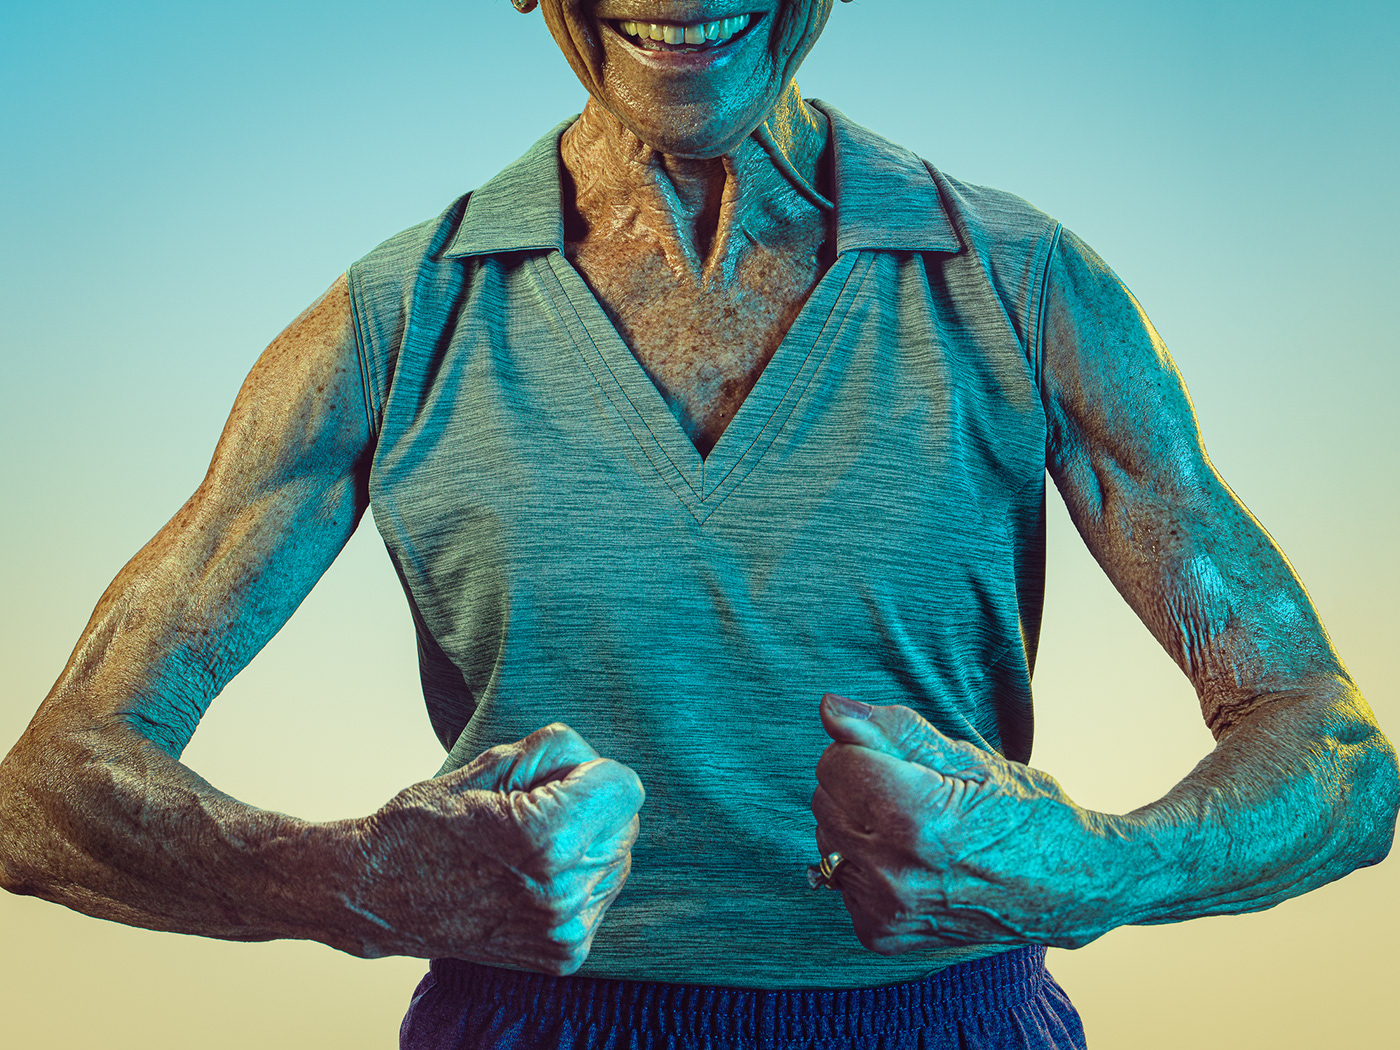 portraits portrait senior senior citizen athletes athlete olympic projection color gradient